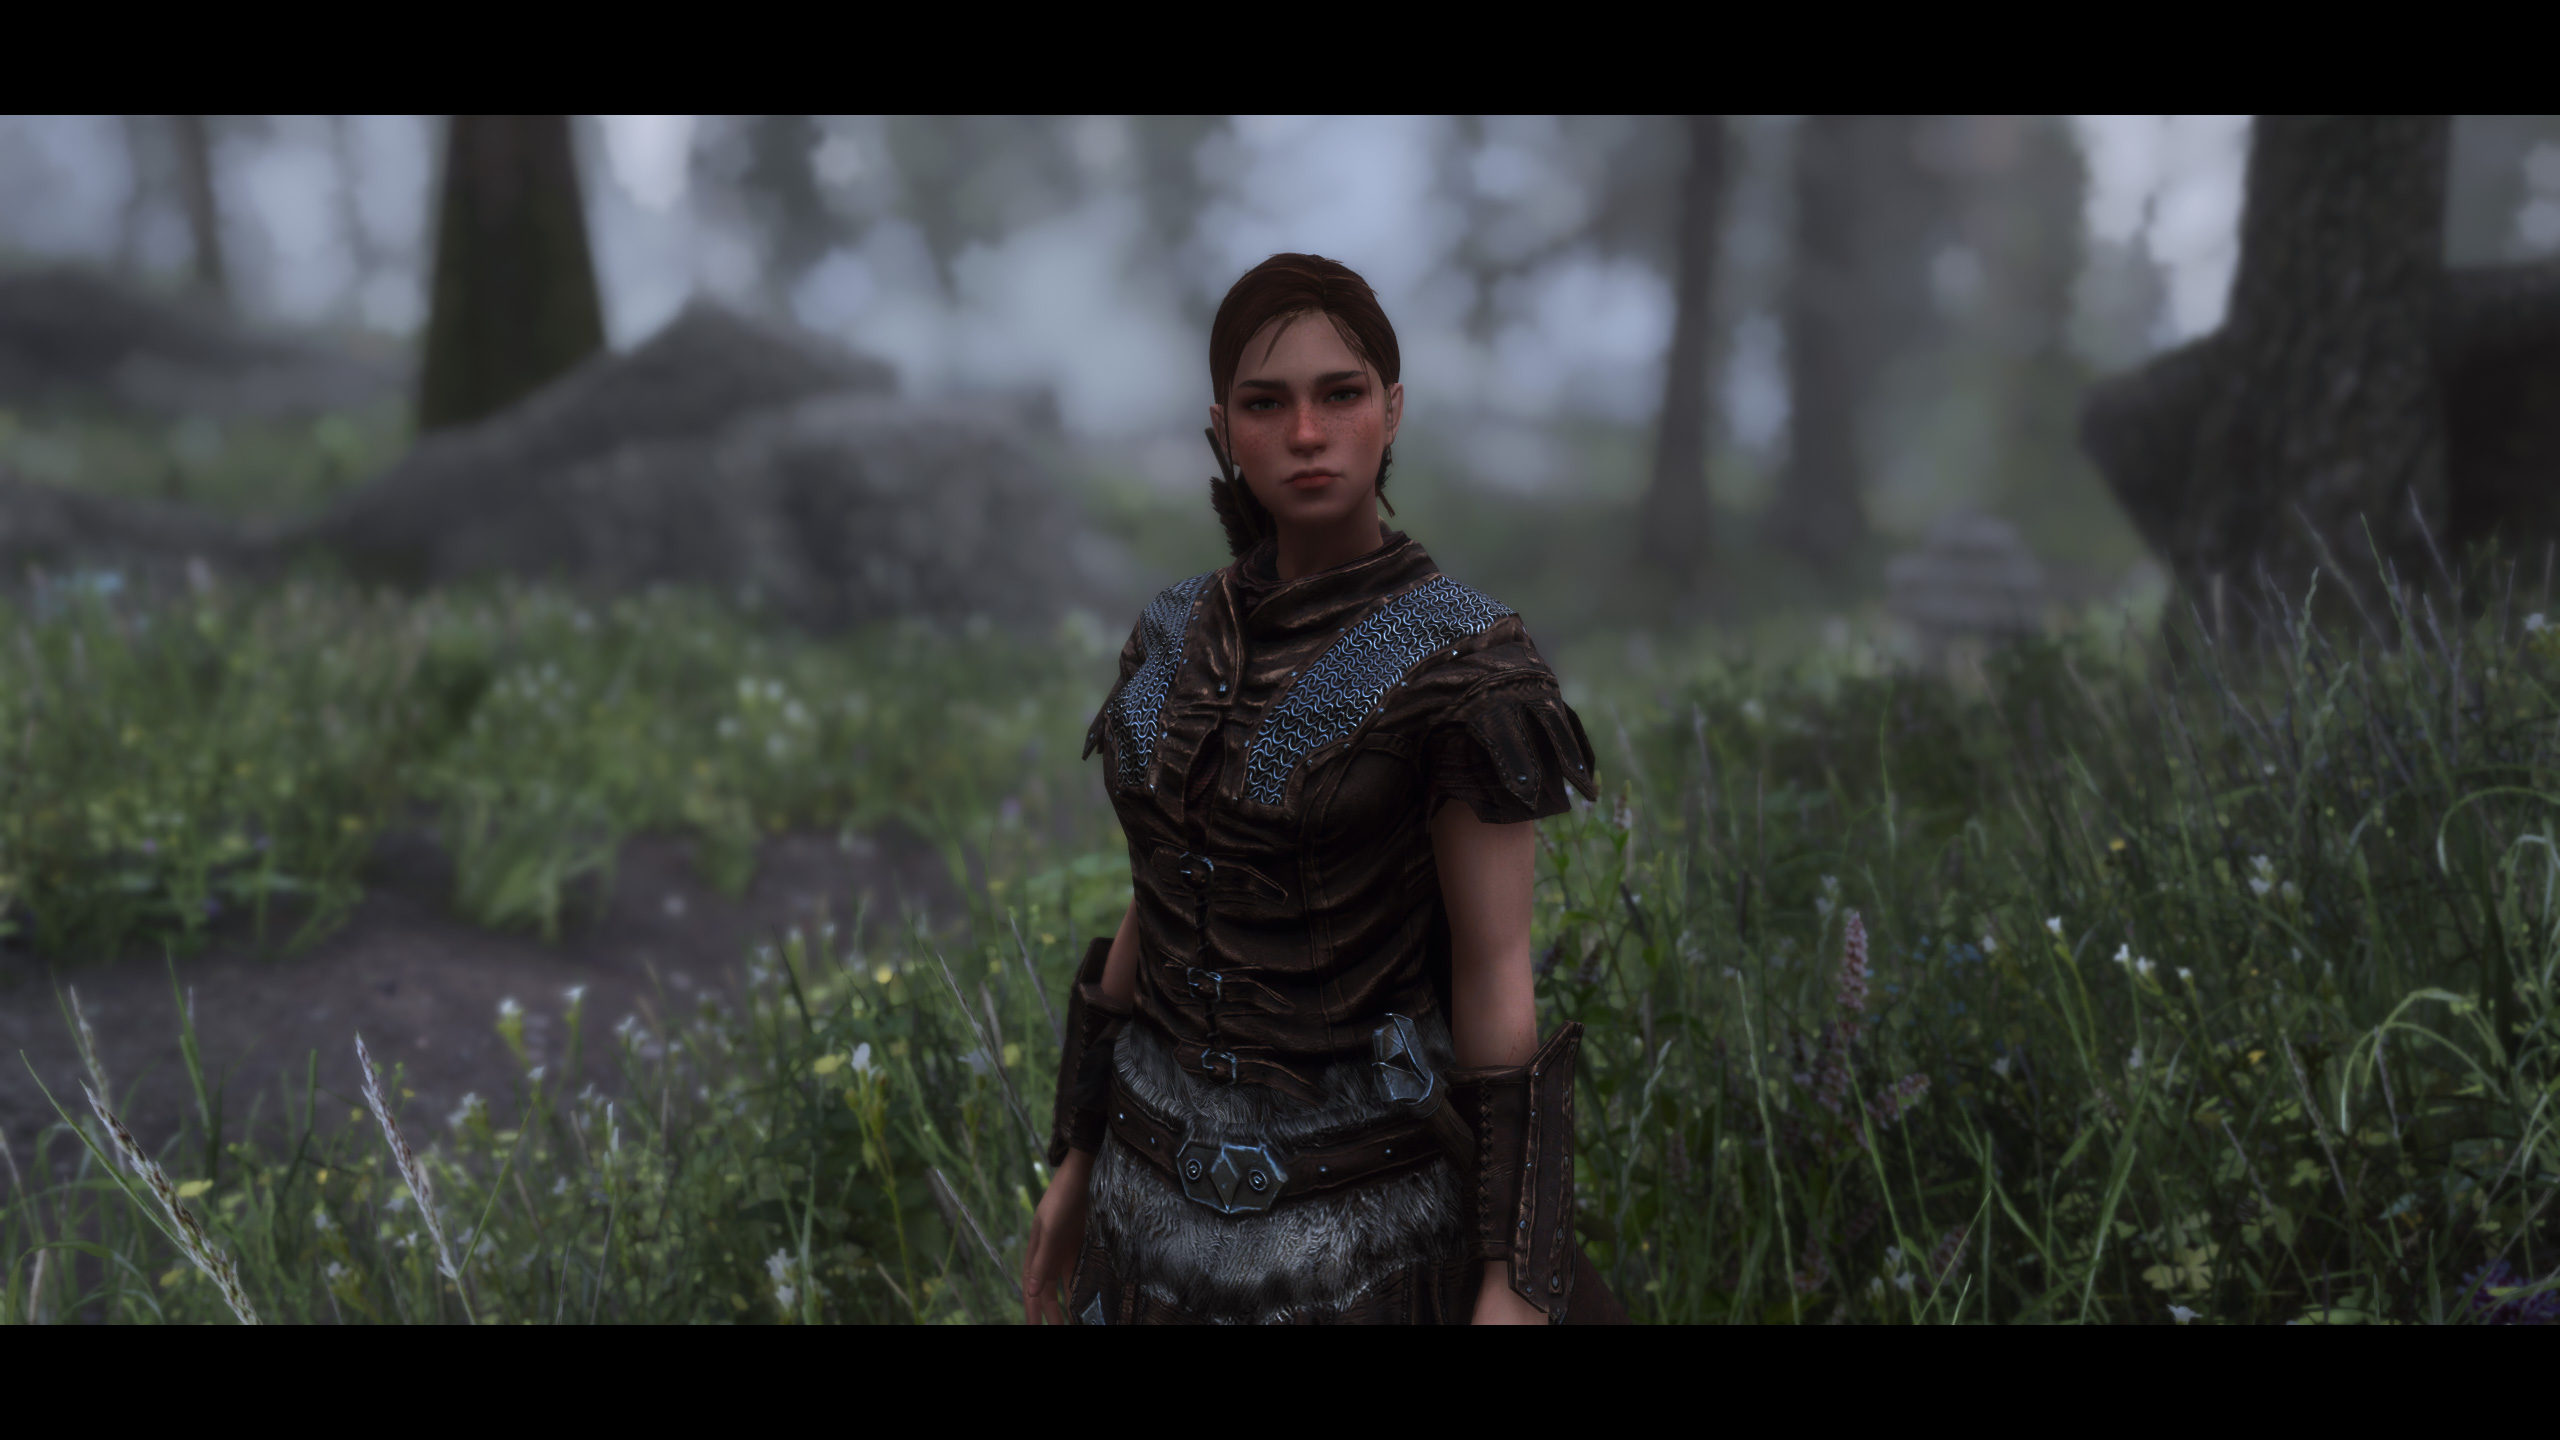 The Elder Scrolls V Skyrim RPG SLMP PC Gaming Video Games Screen Shot Girl In Armor 2560x1440